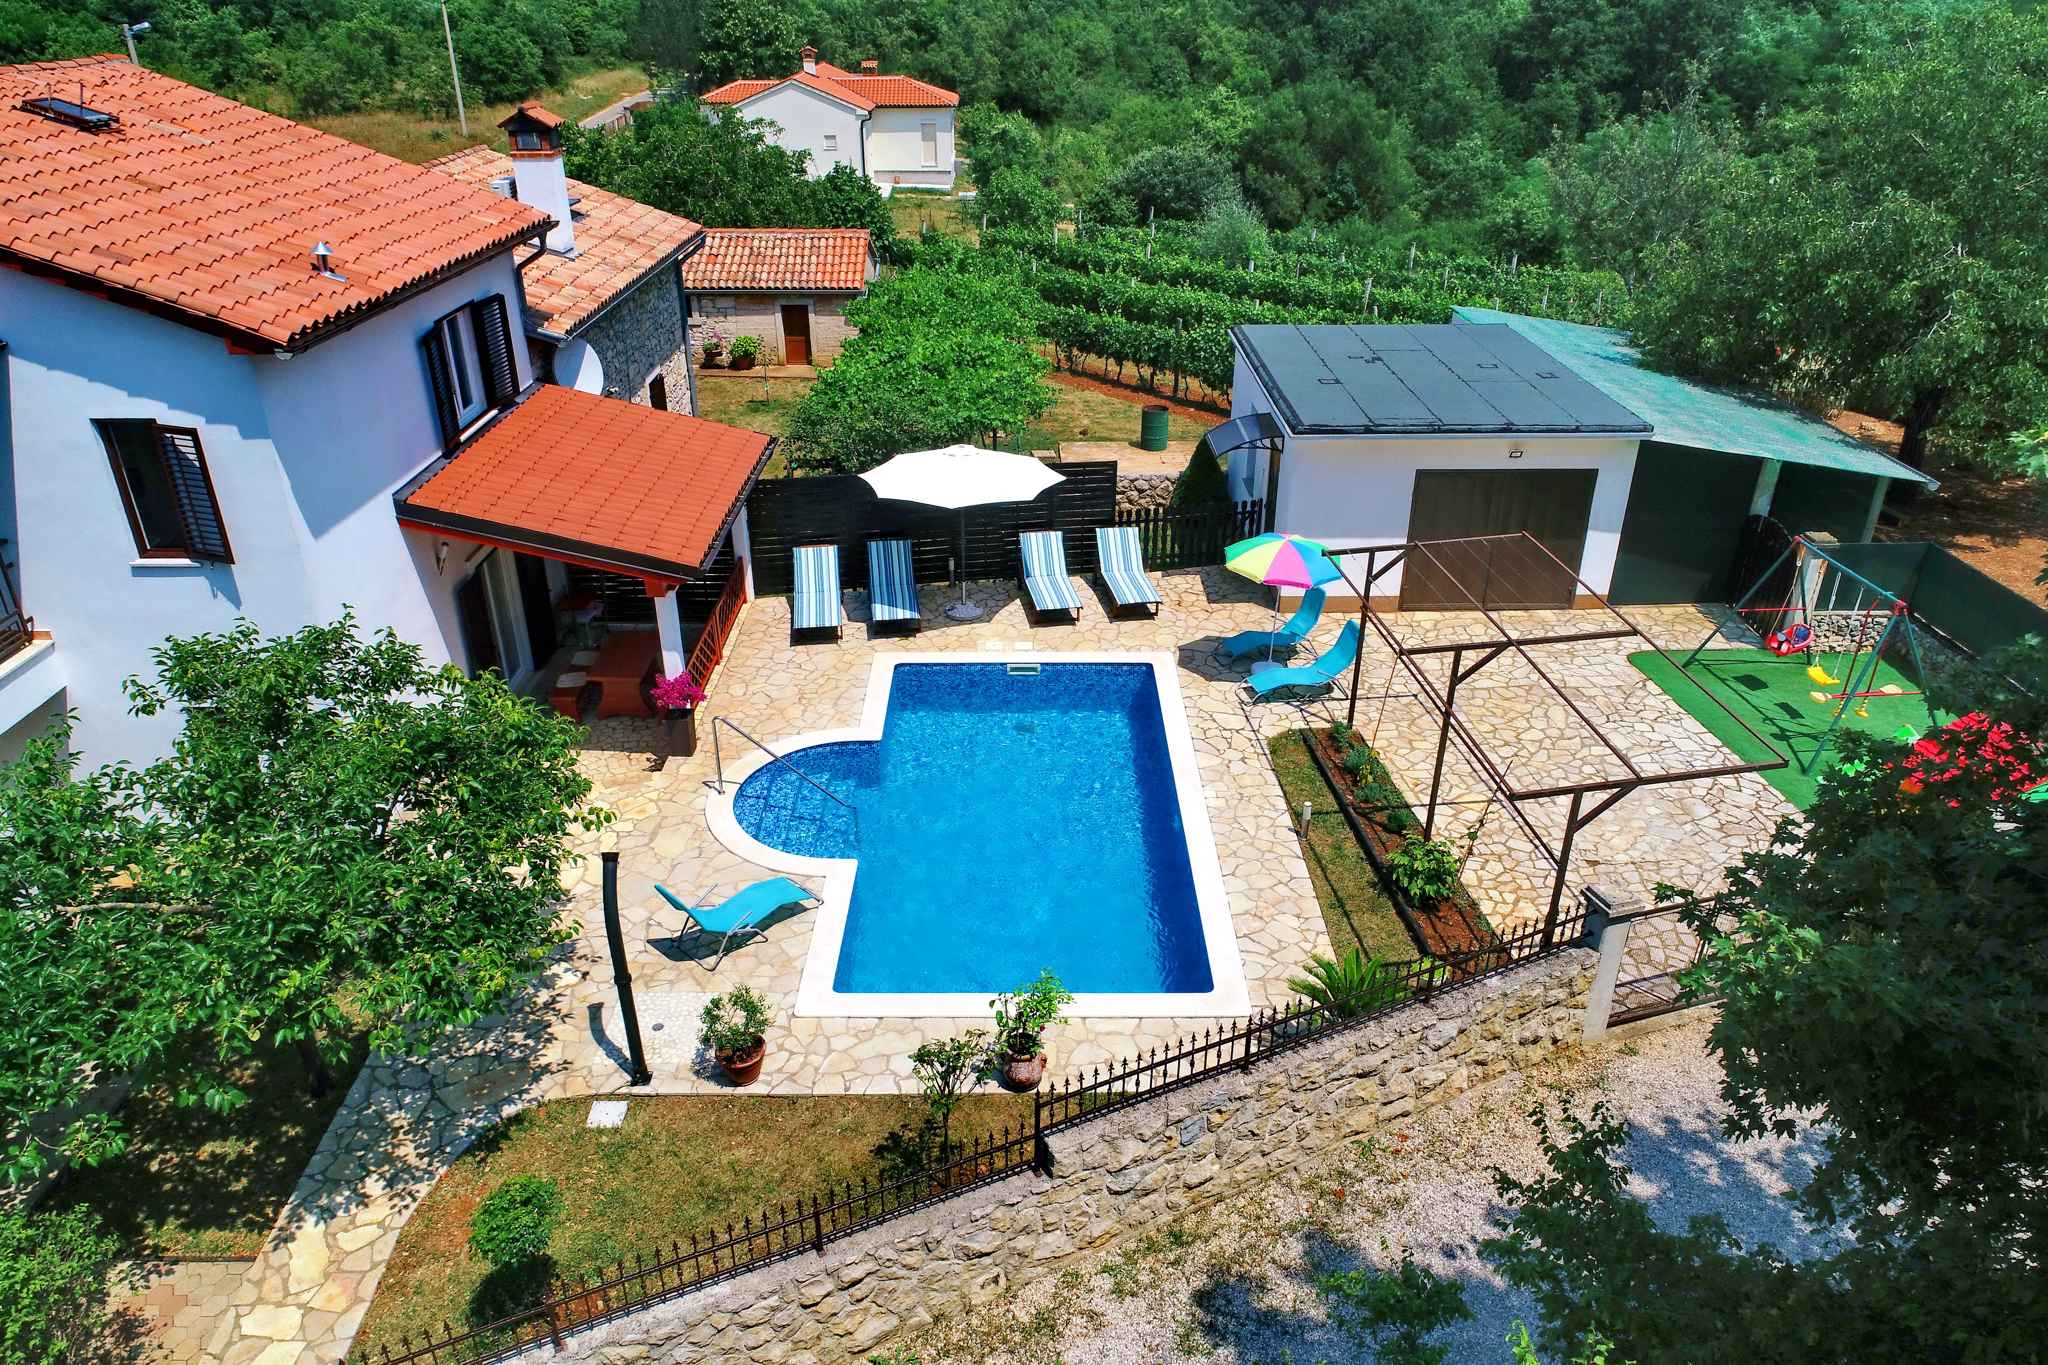 Ferienhaus mit Pool in ruhiger Lage für Famil  in Istrien